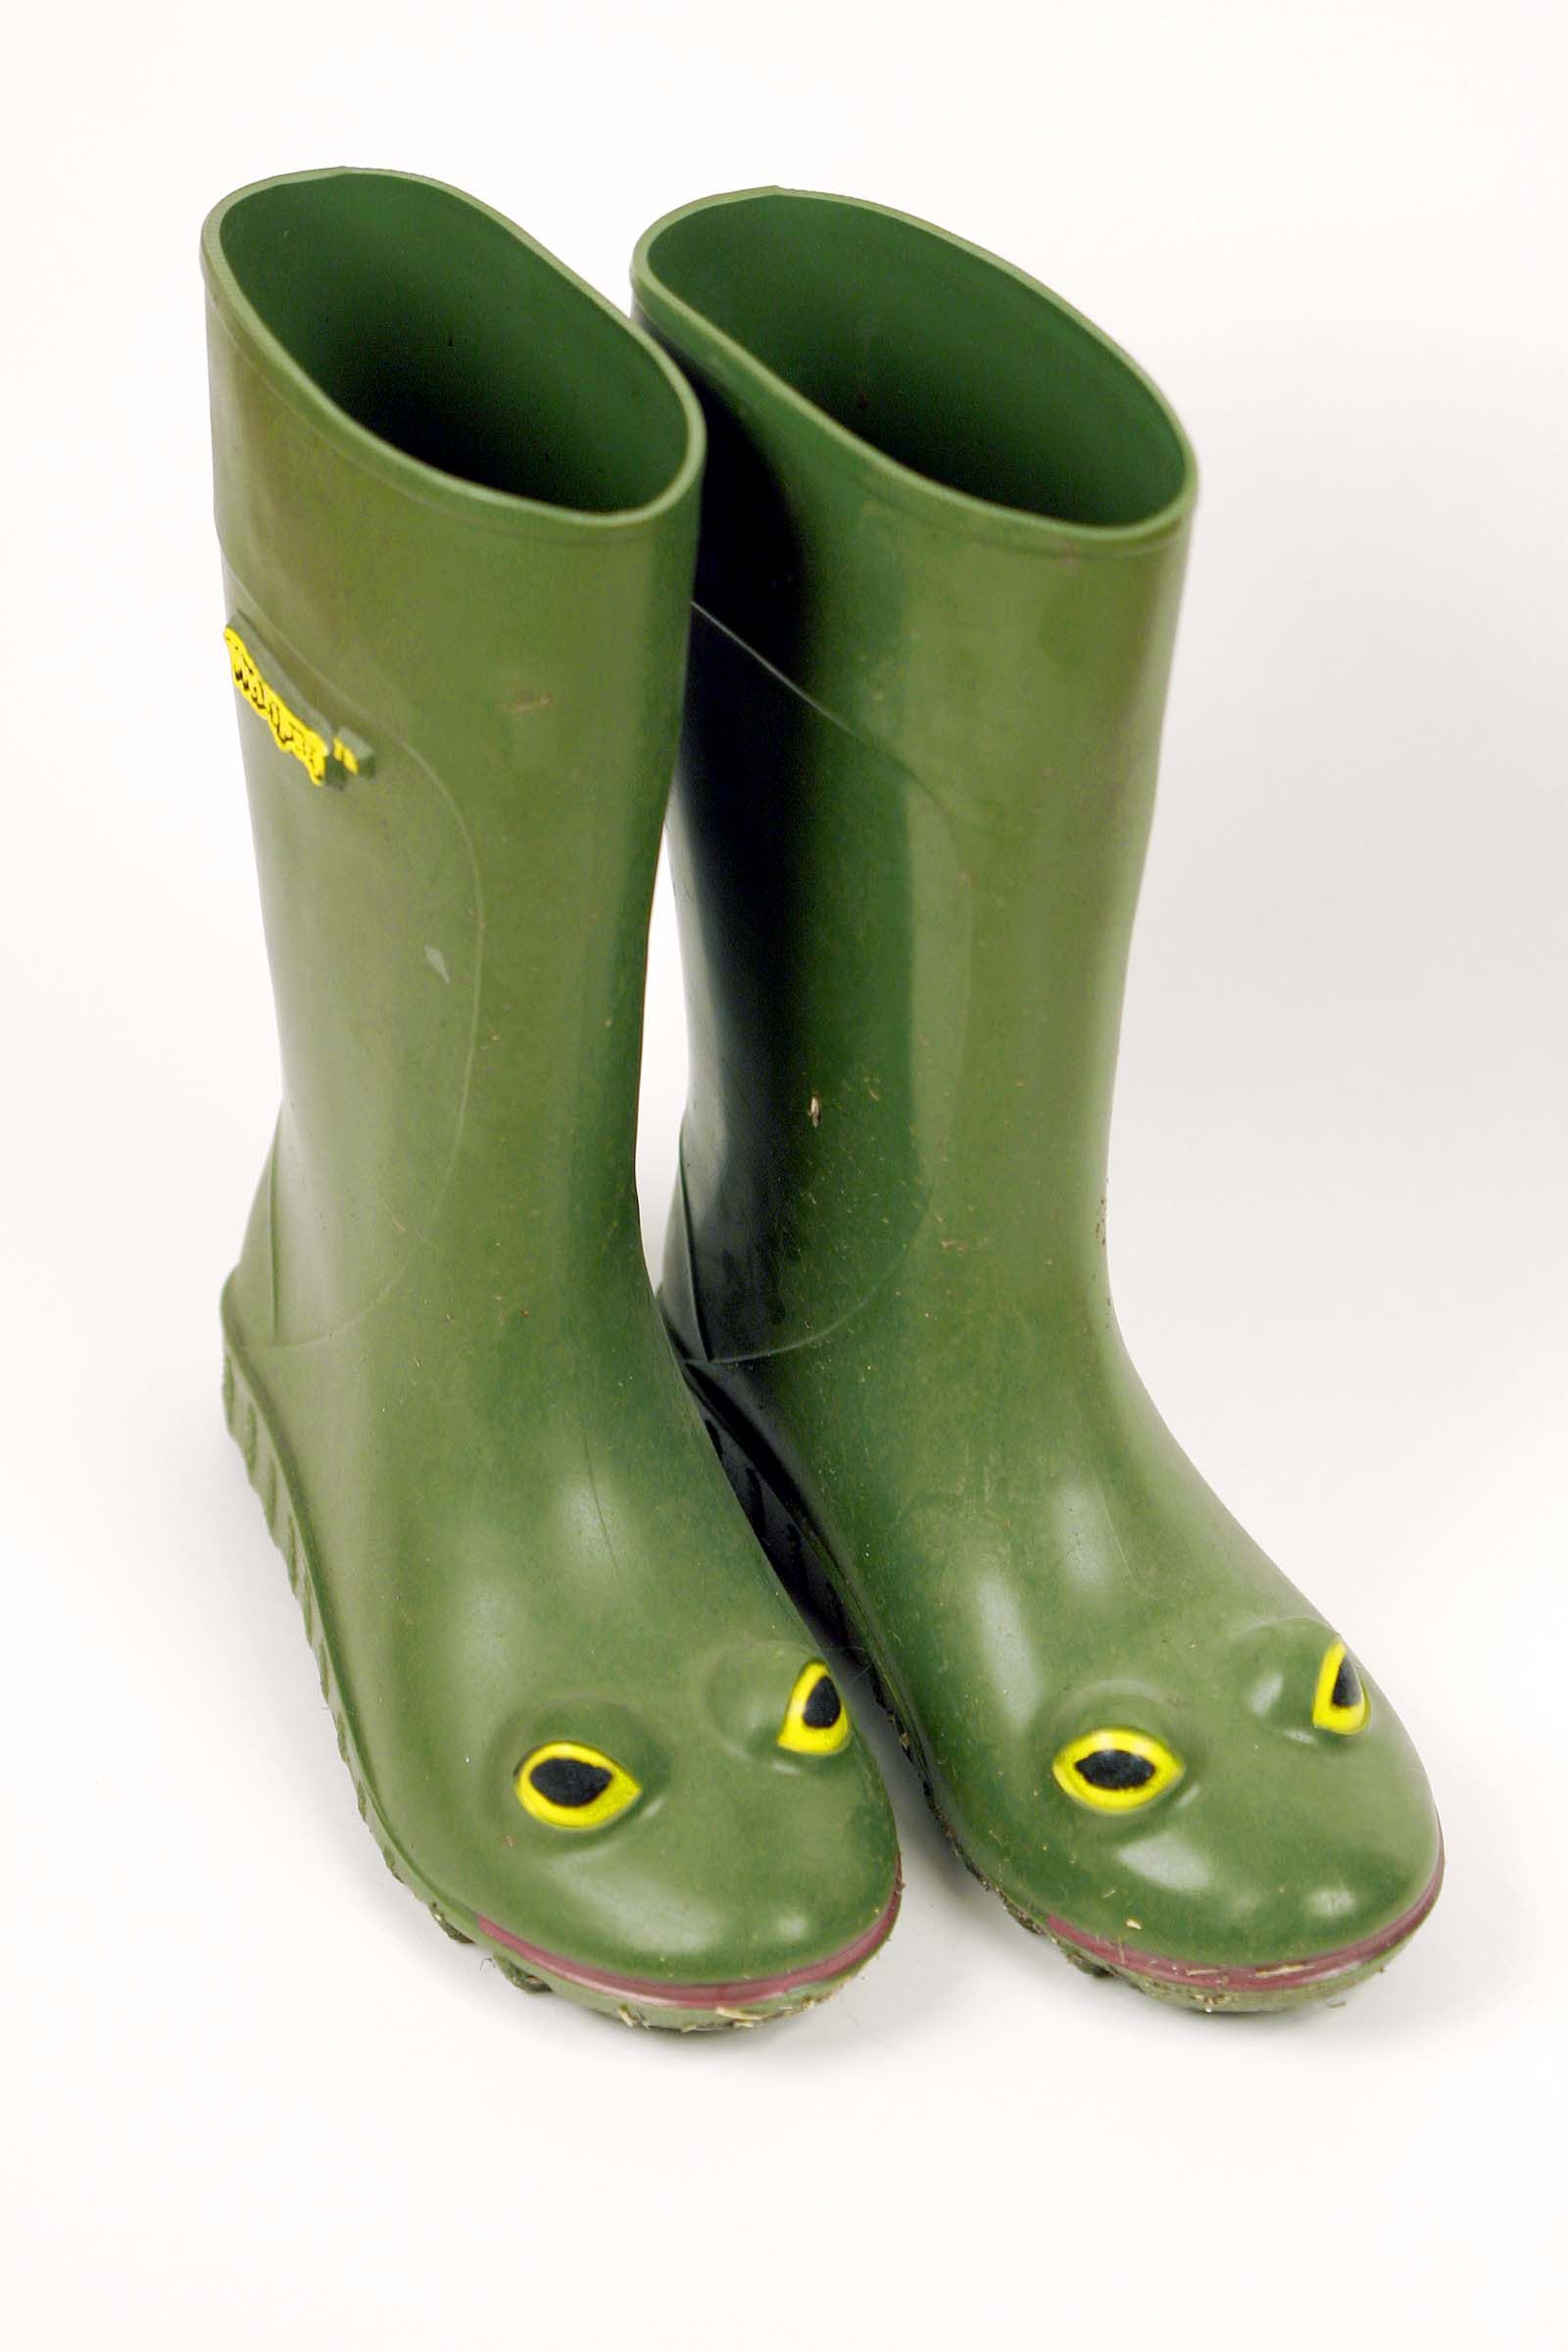 Frog boots rust цена фото 14